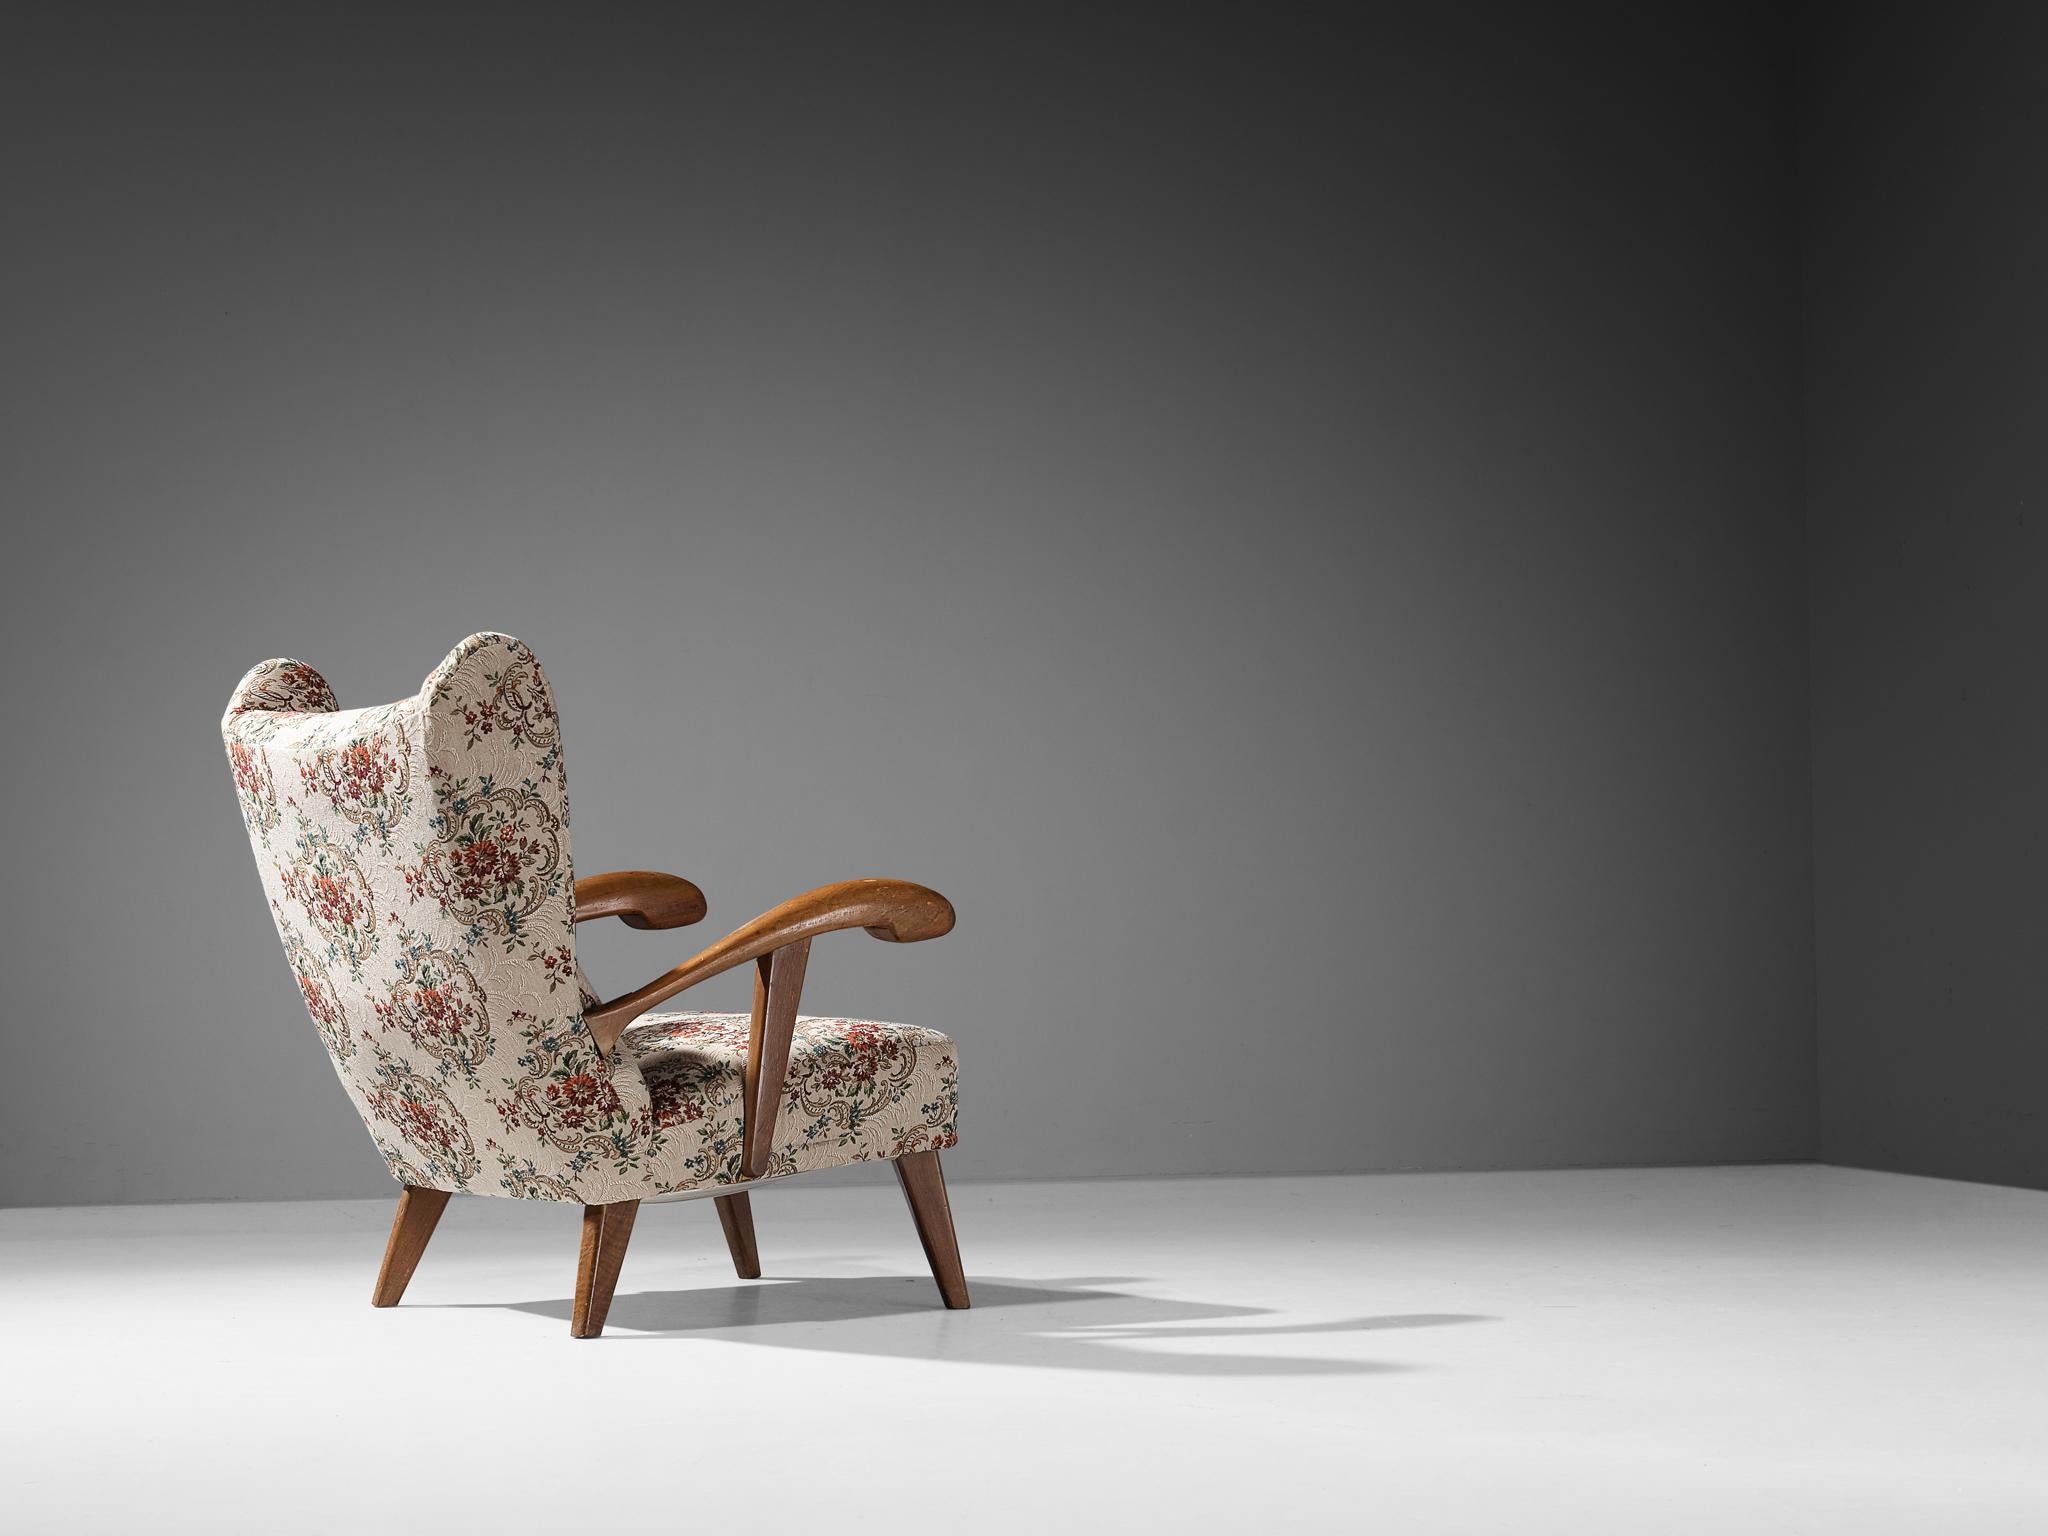 Chaise longue, hêtre teinté, tissu, République tchèque, années 1950. 

Cette chaise de salon magnifiquement conçue possède une construction frappante grâce aux éléments sculptés discernables dans le cadre et le dossier en bois. Les accoudoirs sont